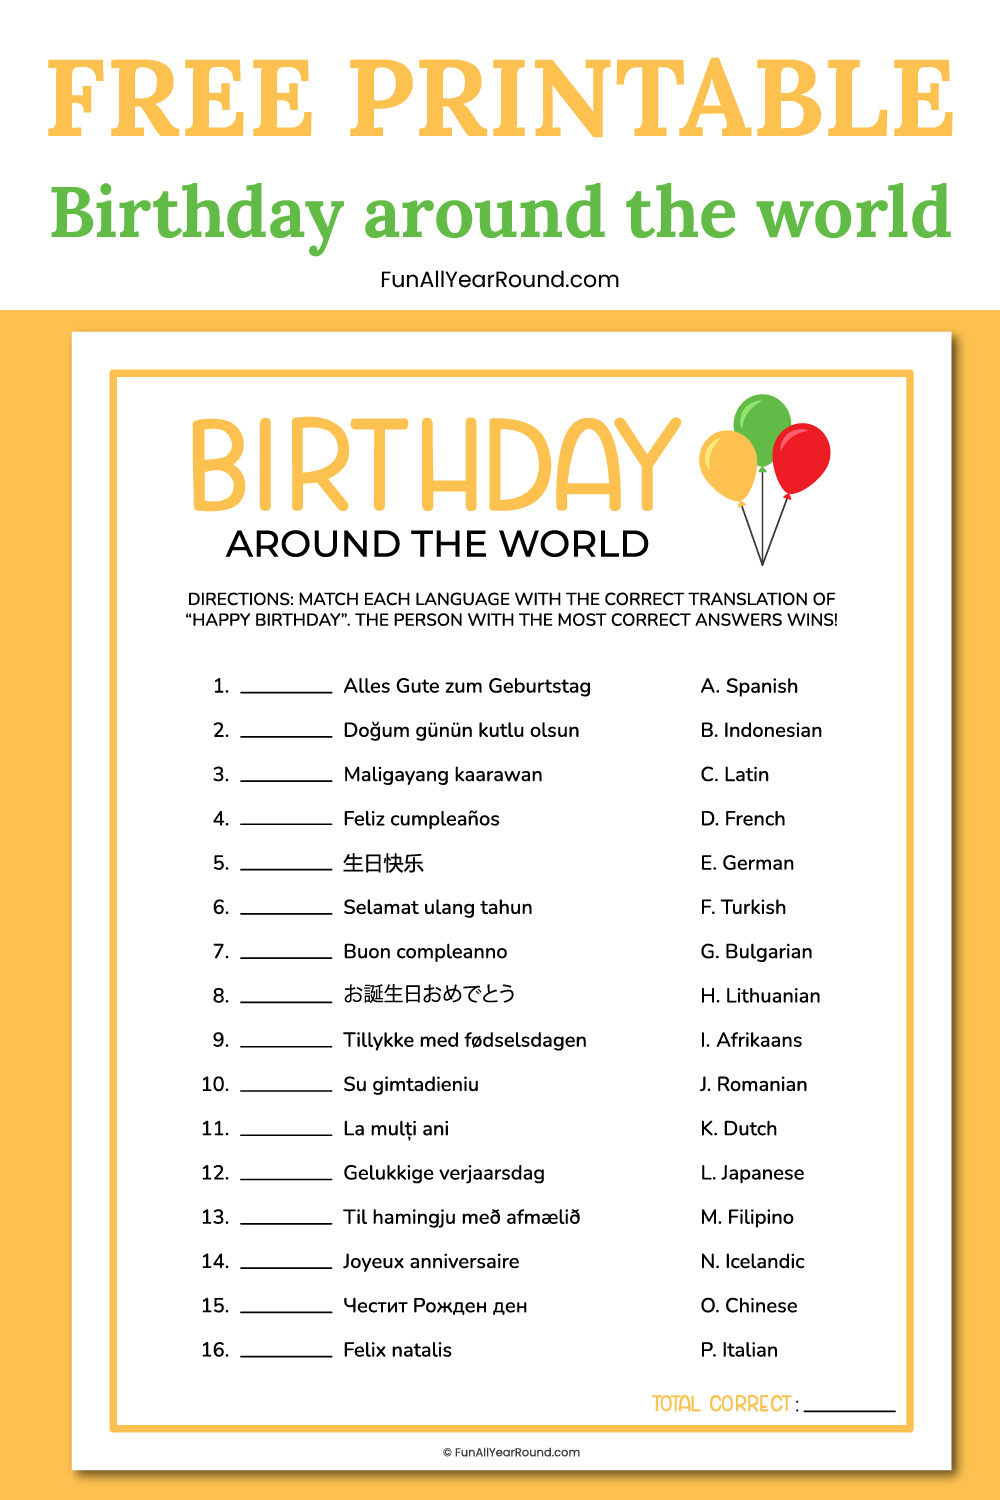 Birthday around the world